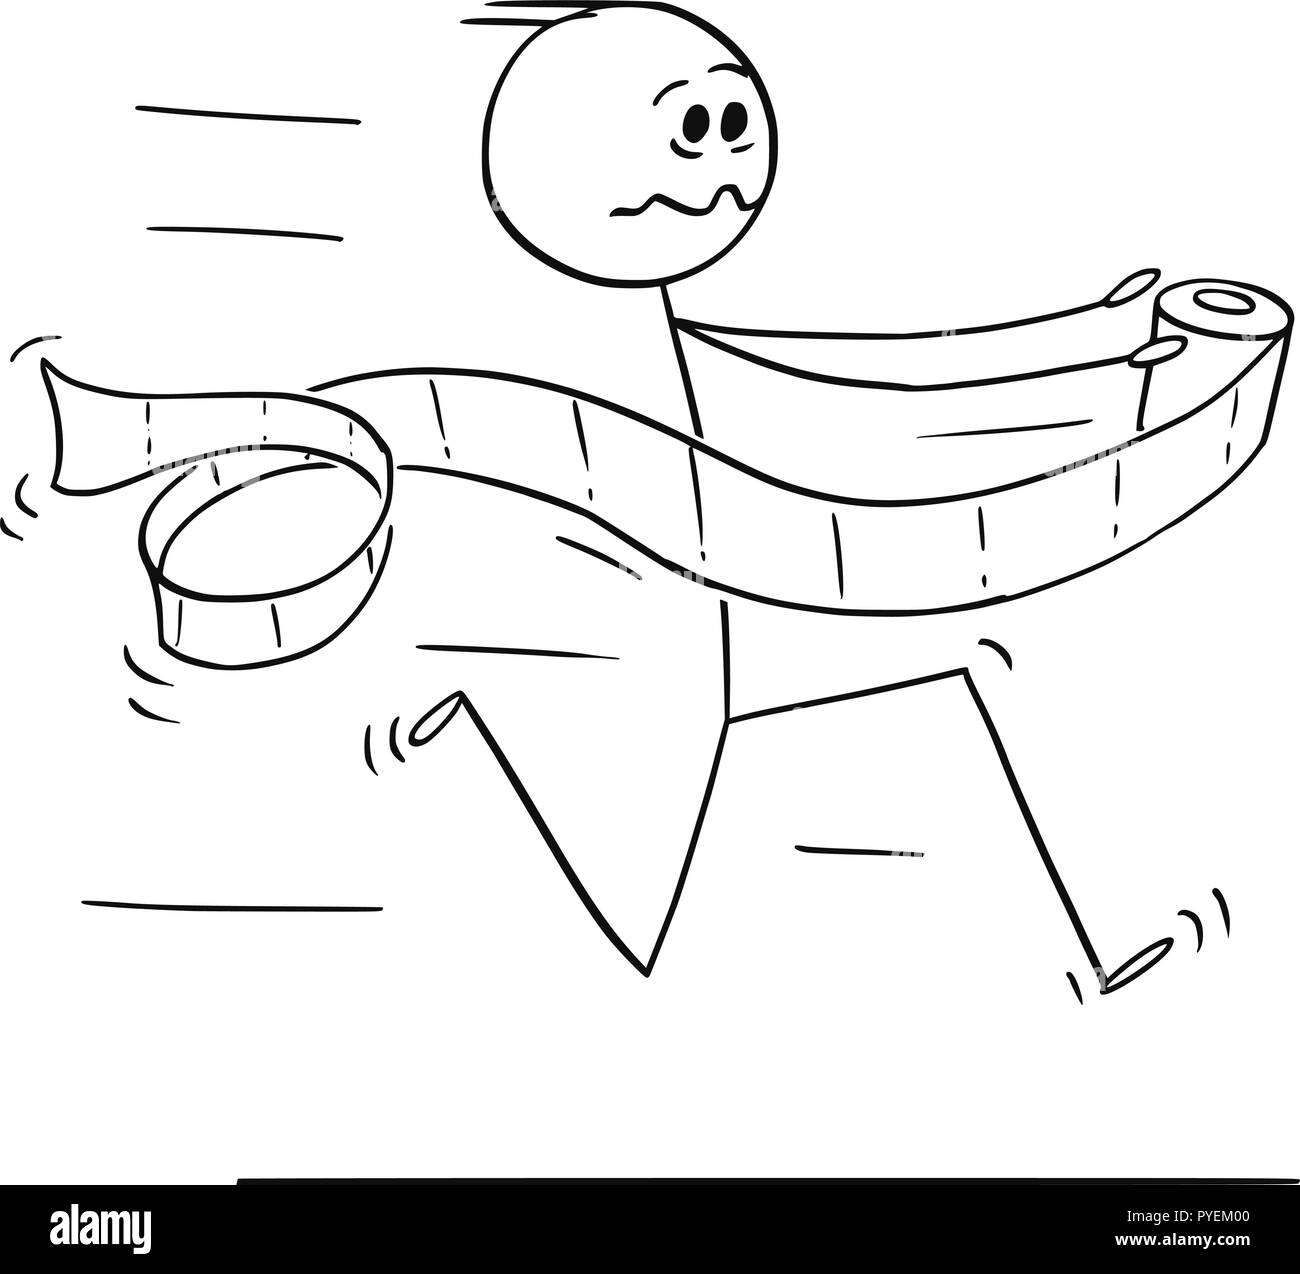 Caricature de l'homme fonctionnant en panique pour toilettes ou salle de bains ou douche avec du papier toilette dans la main Illustration de Vecteur